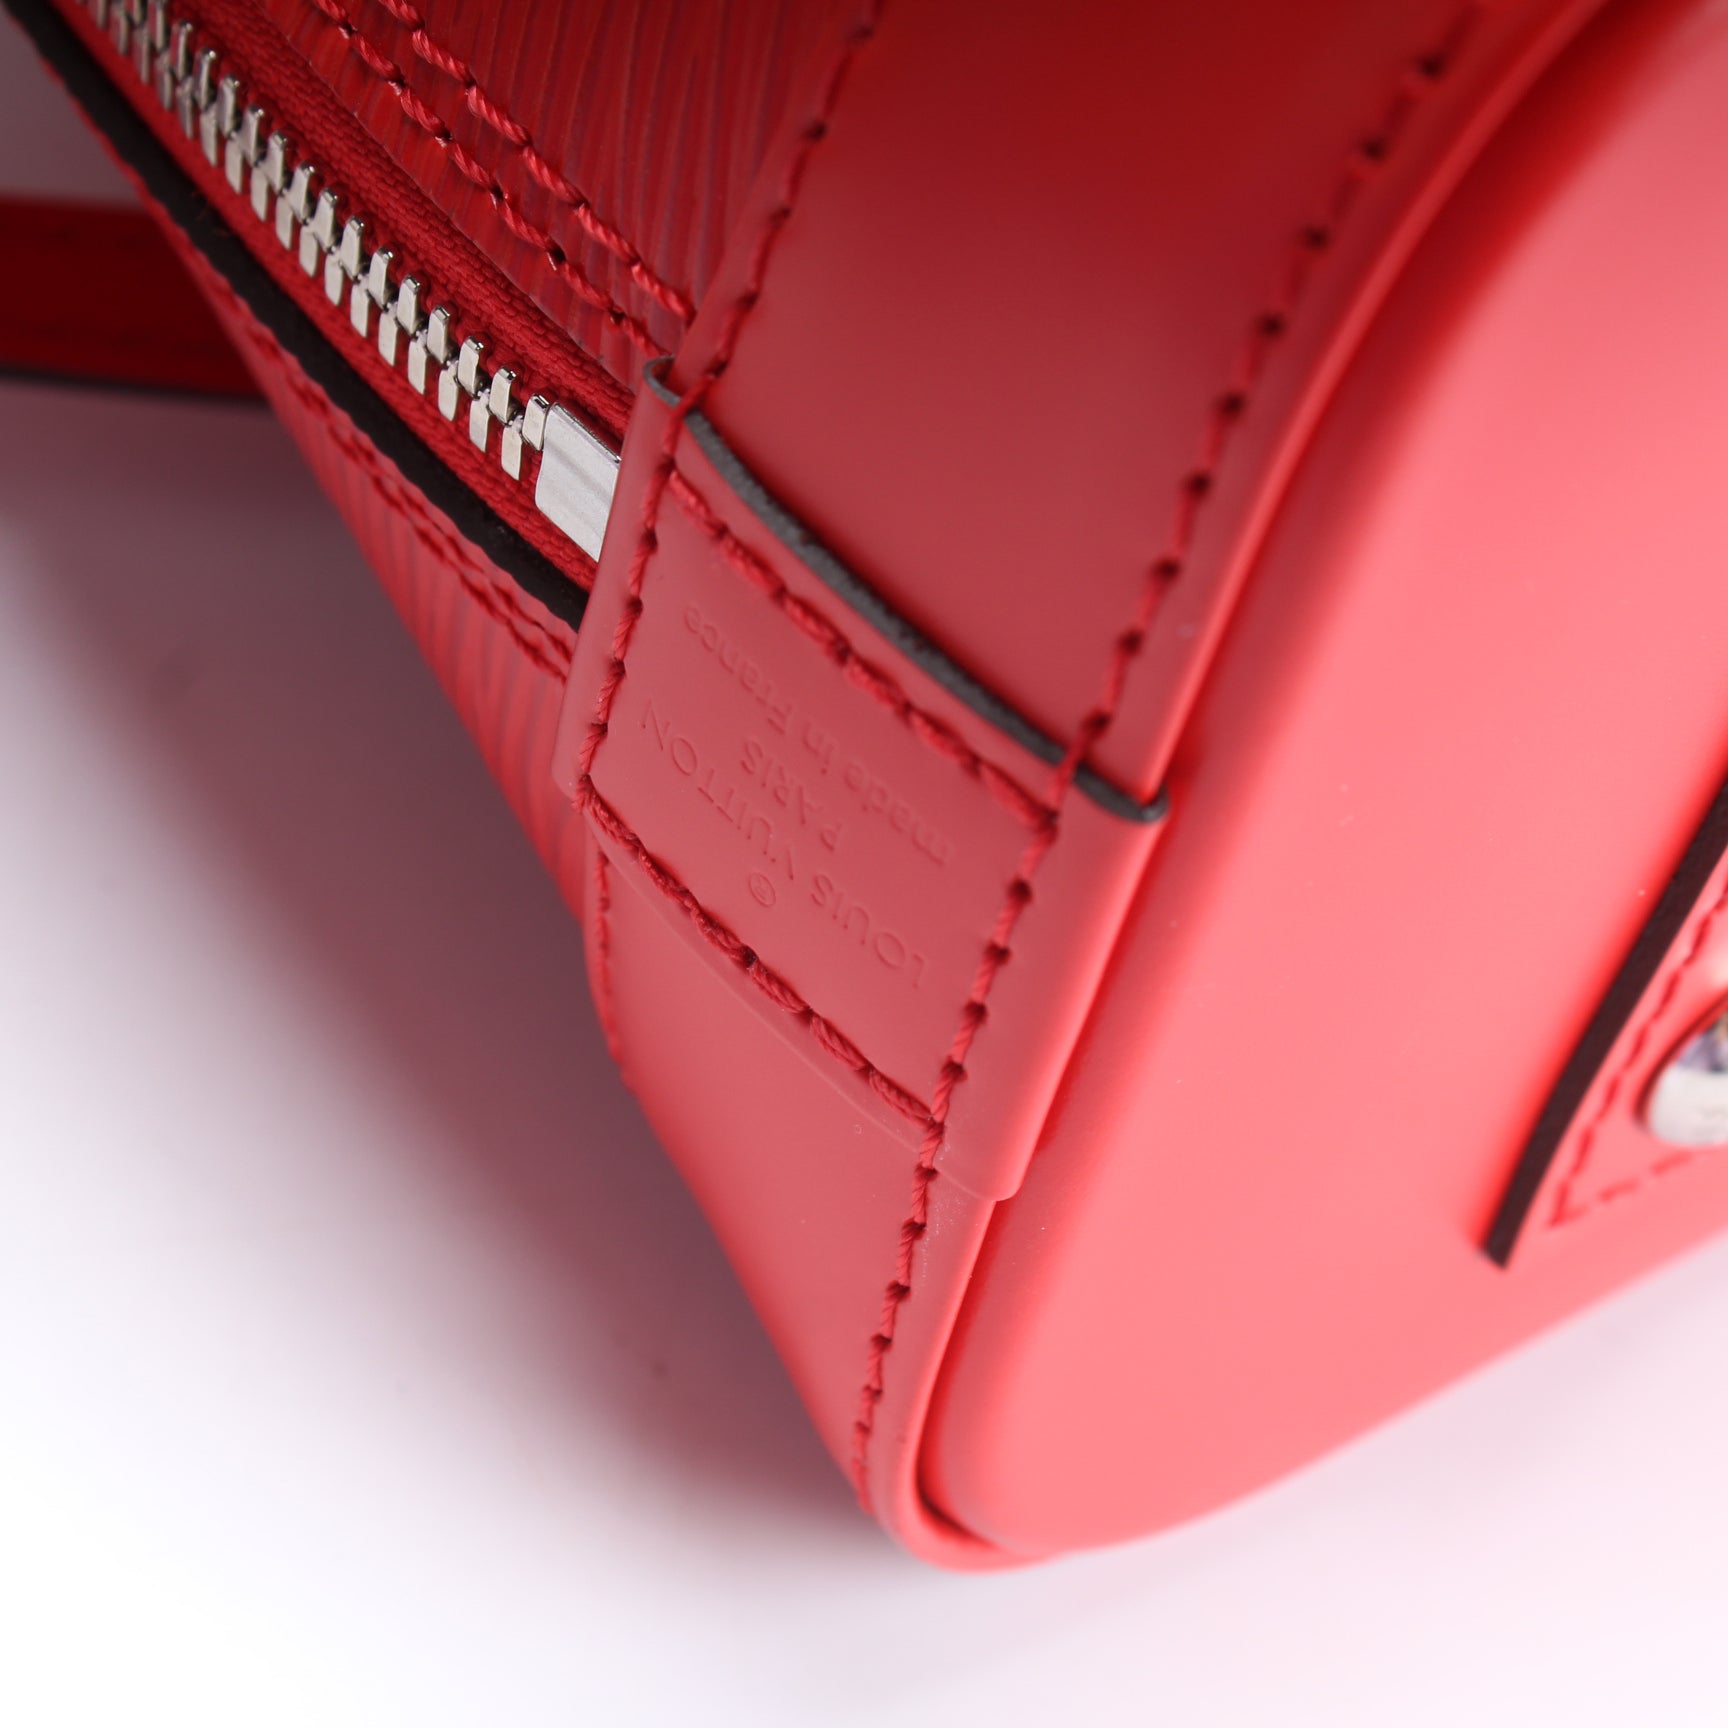 Alma Mini Epi – Keeks Designer Handbags